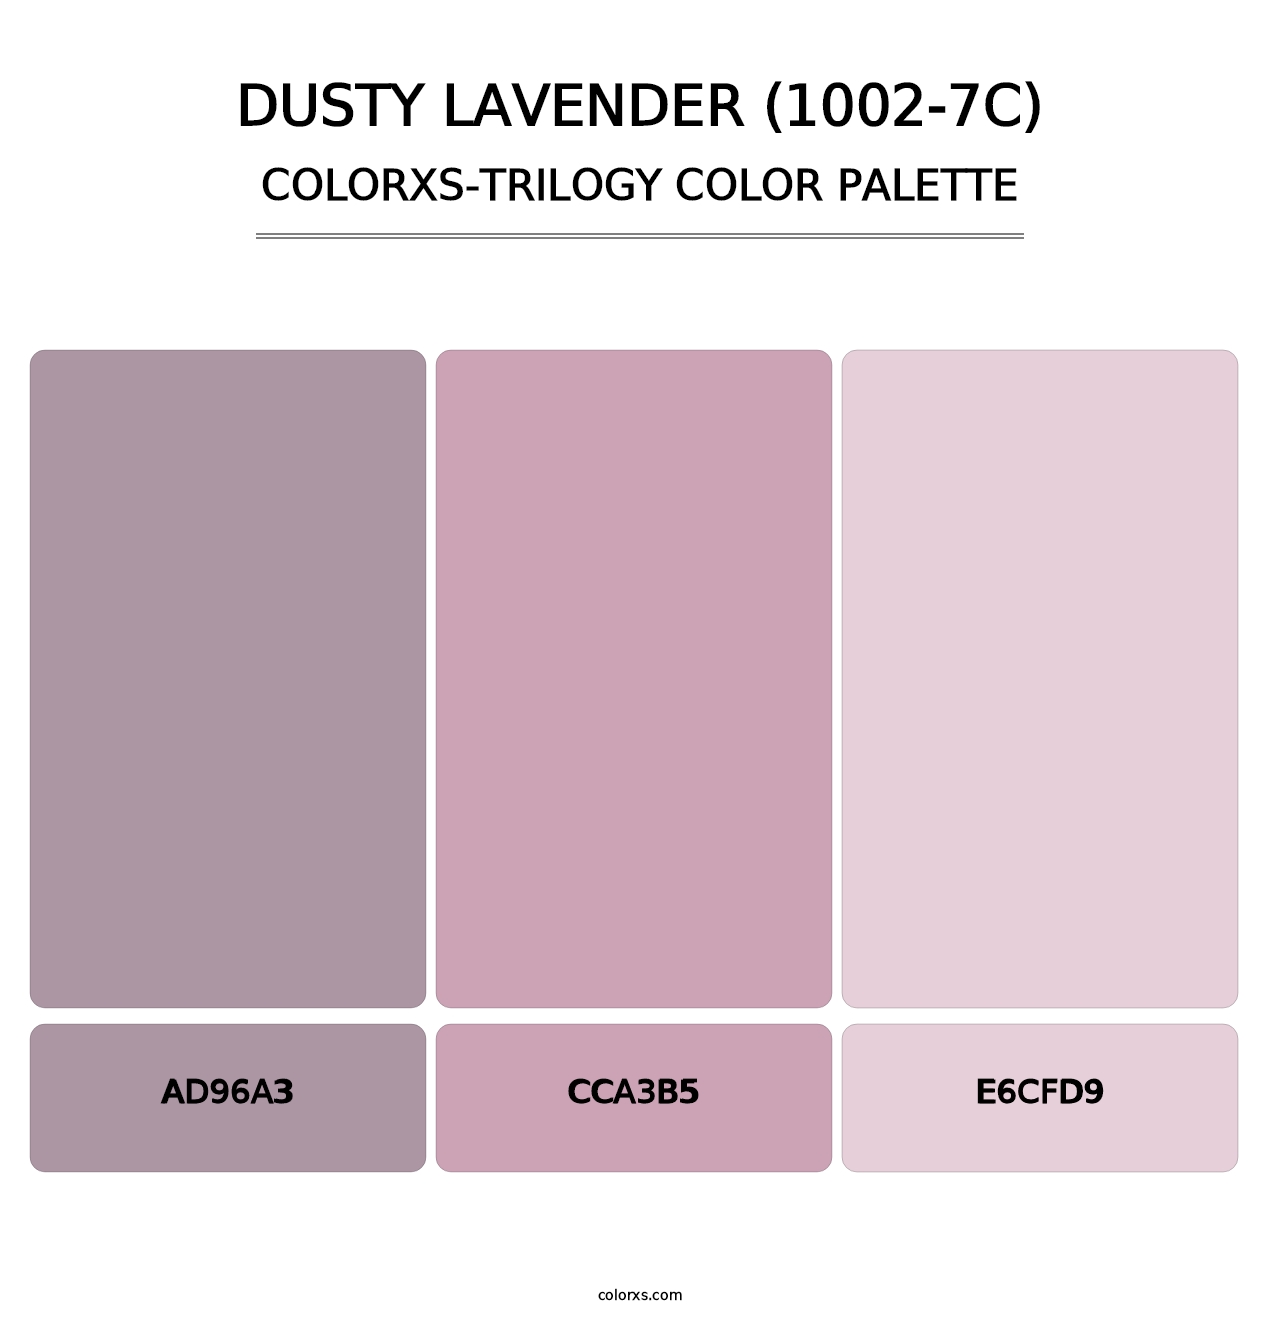 Dusty Lavender (1002-7C) - Colorxs Trilogy Palette